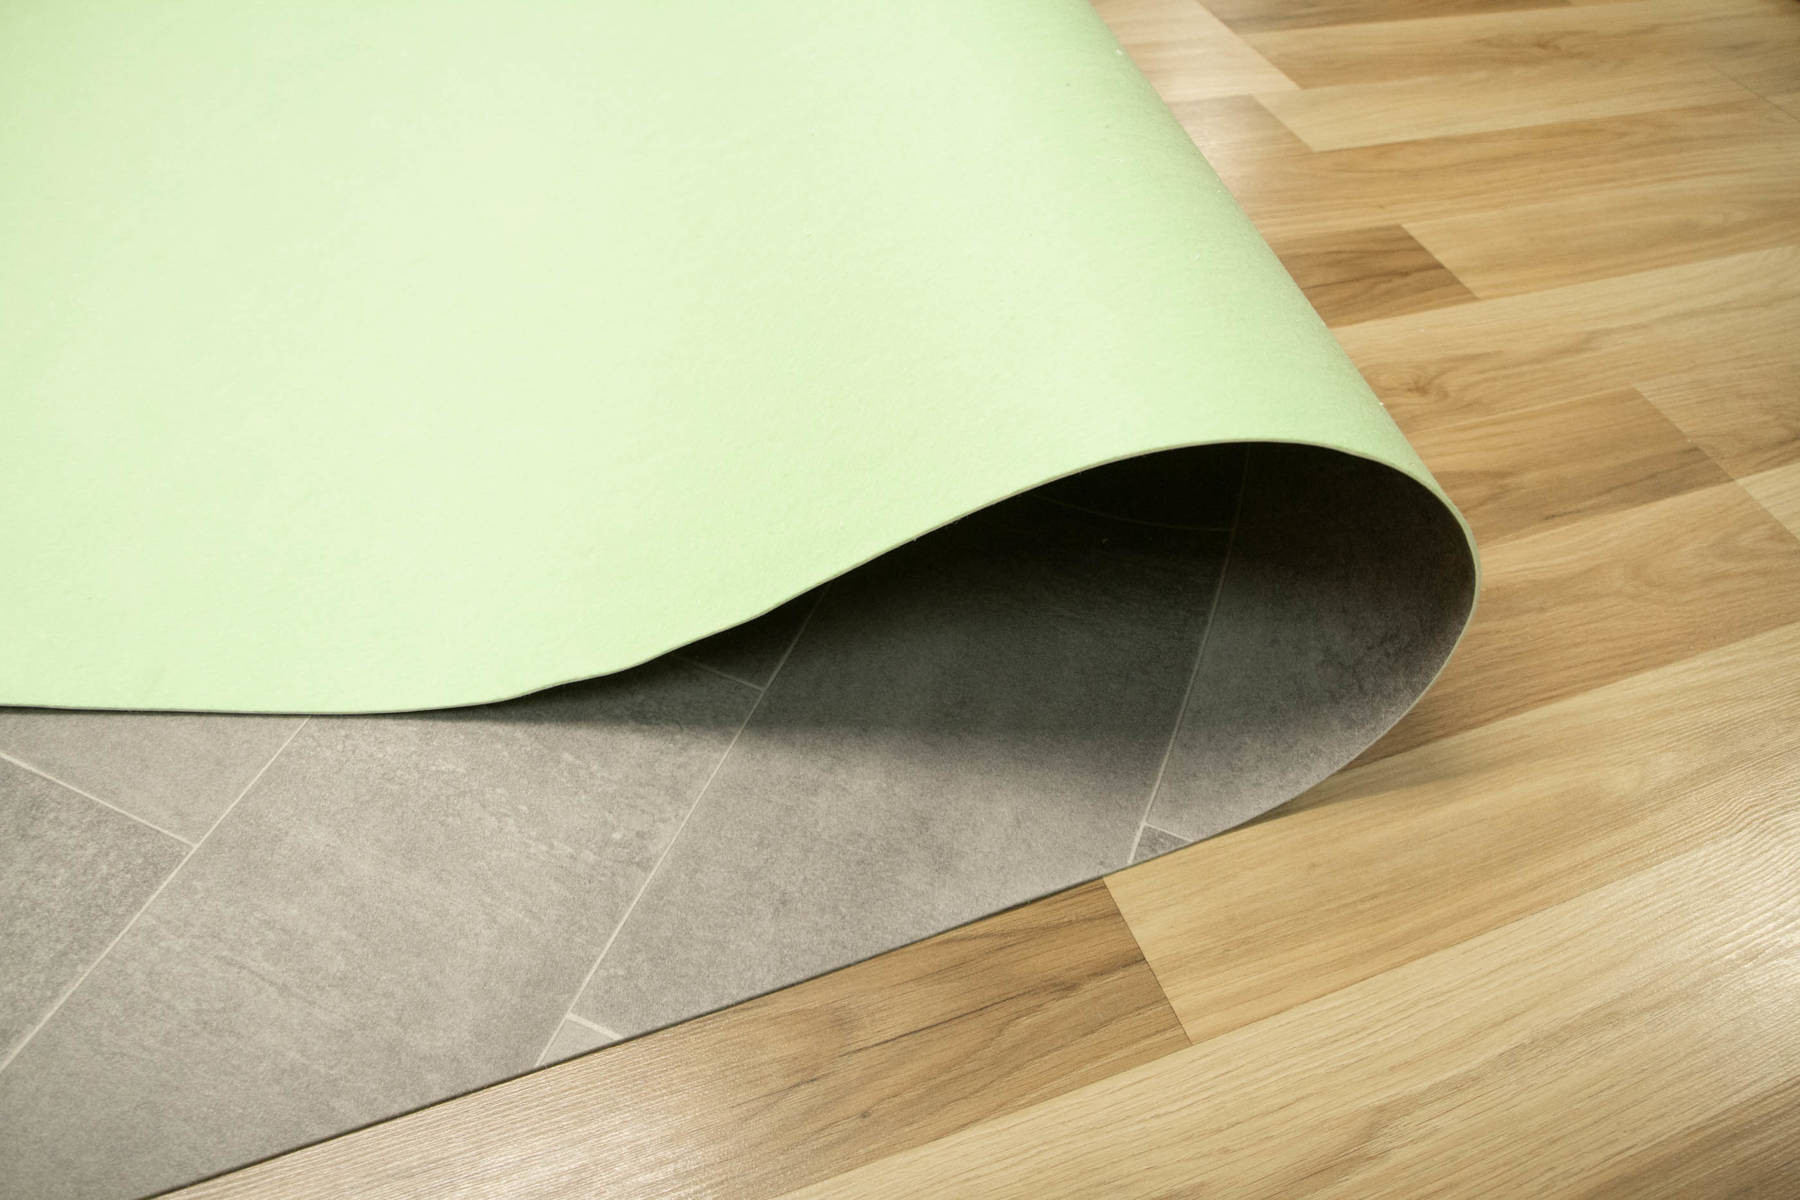 PVC podlaha Texmark Bilbao 593 šedá